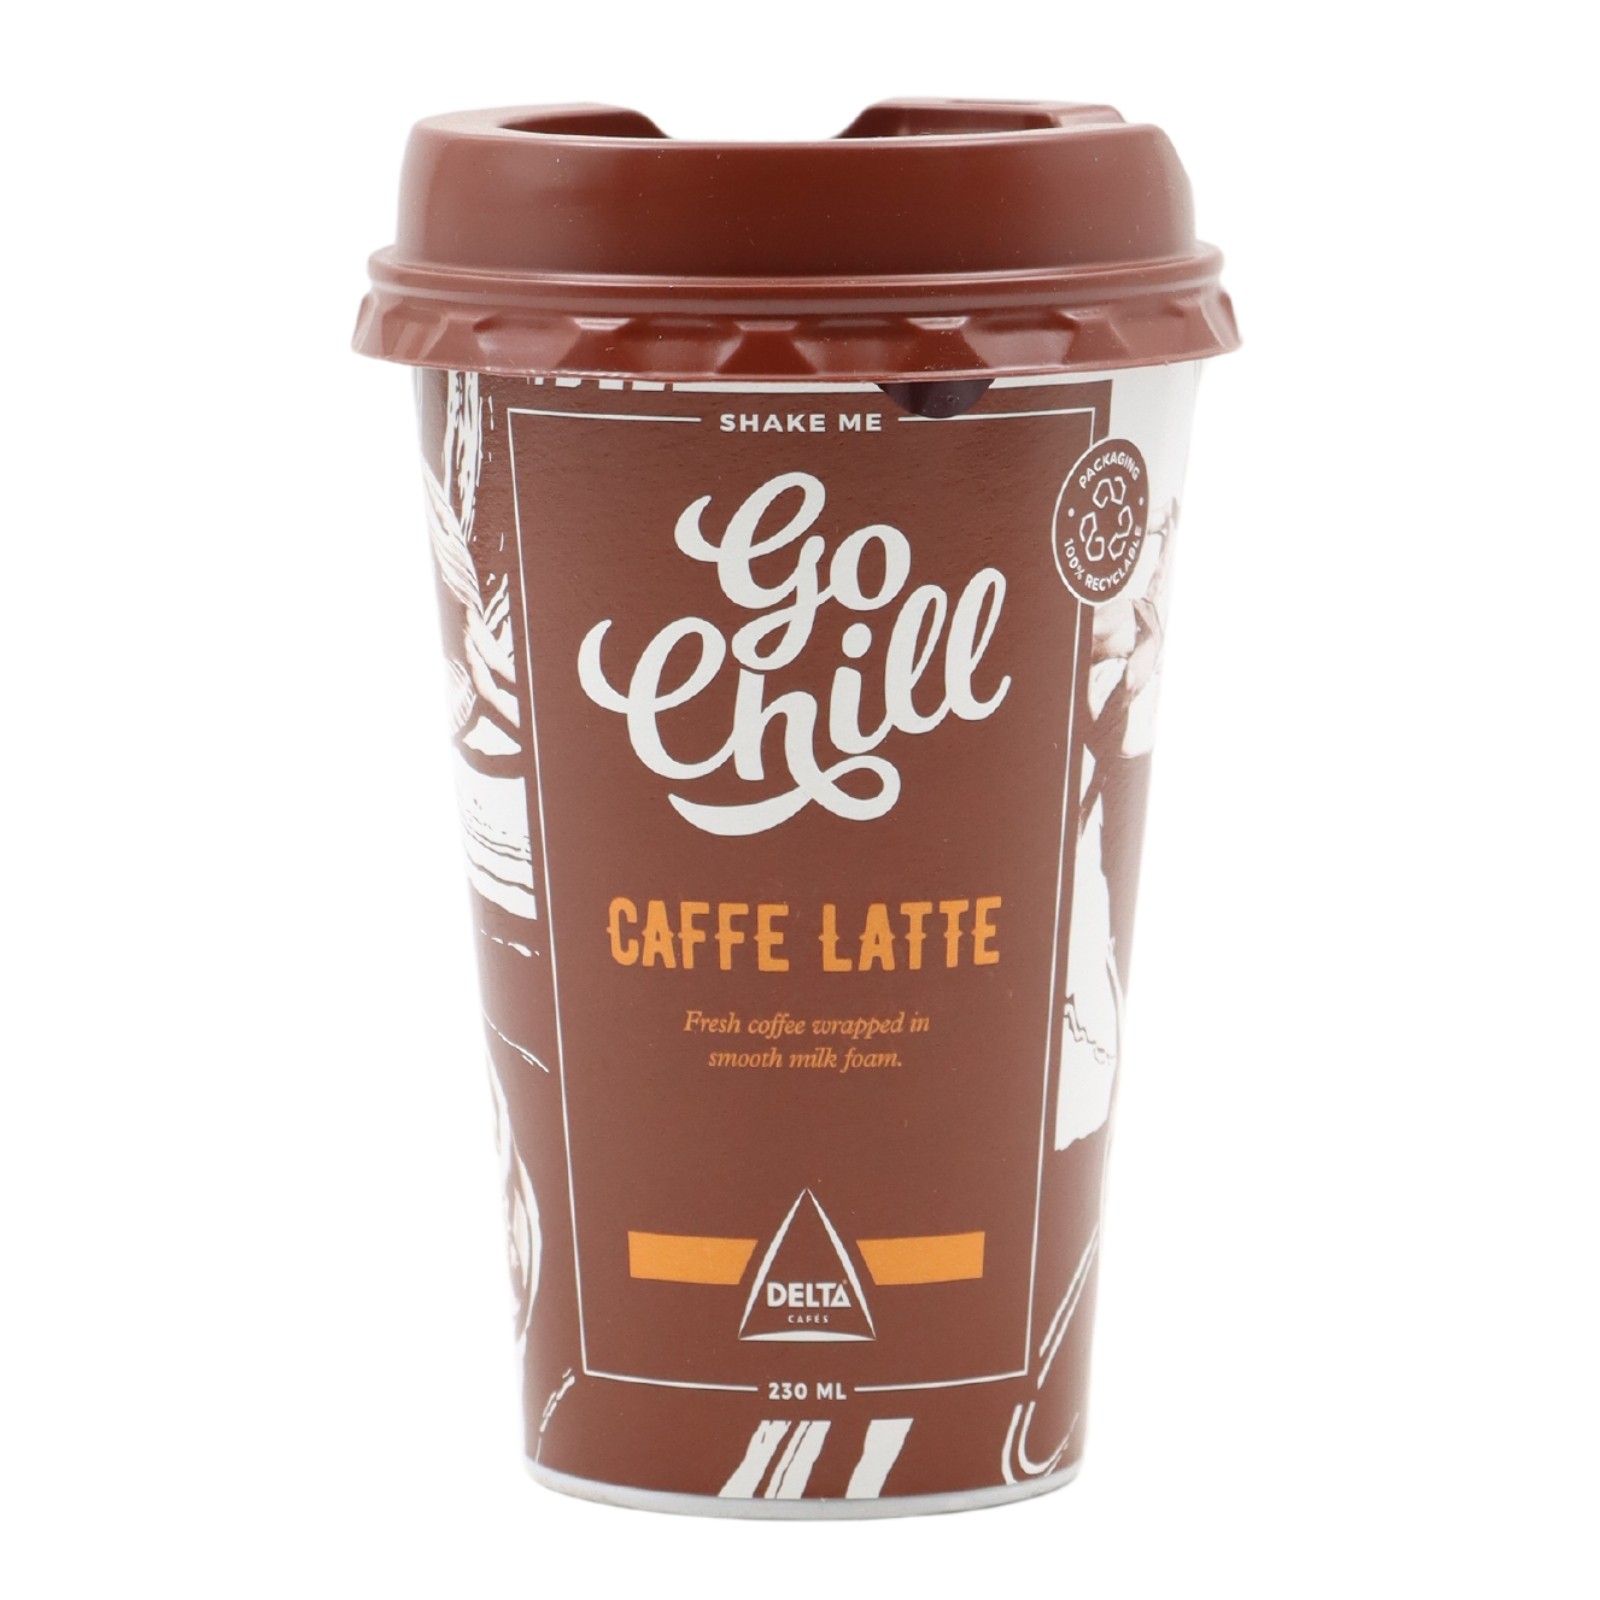 Delta Go Chill Caffe Latte